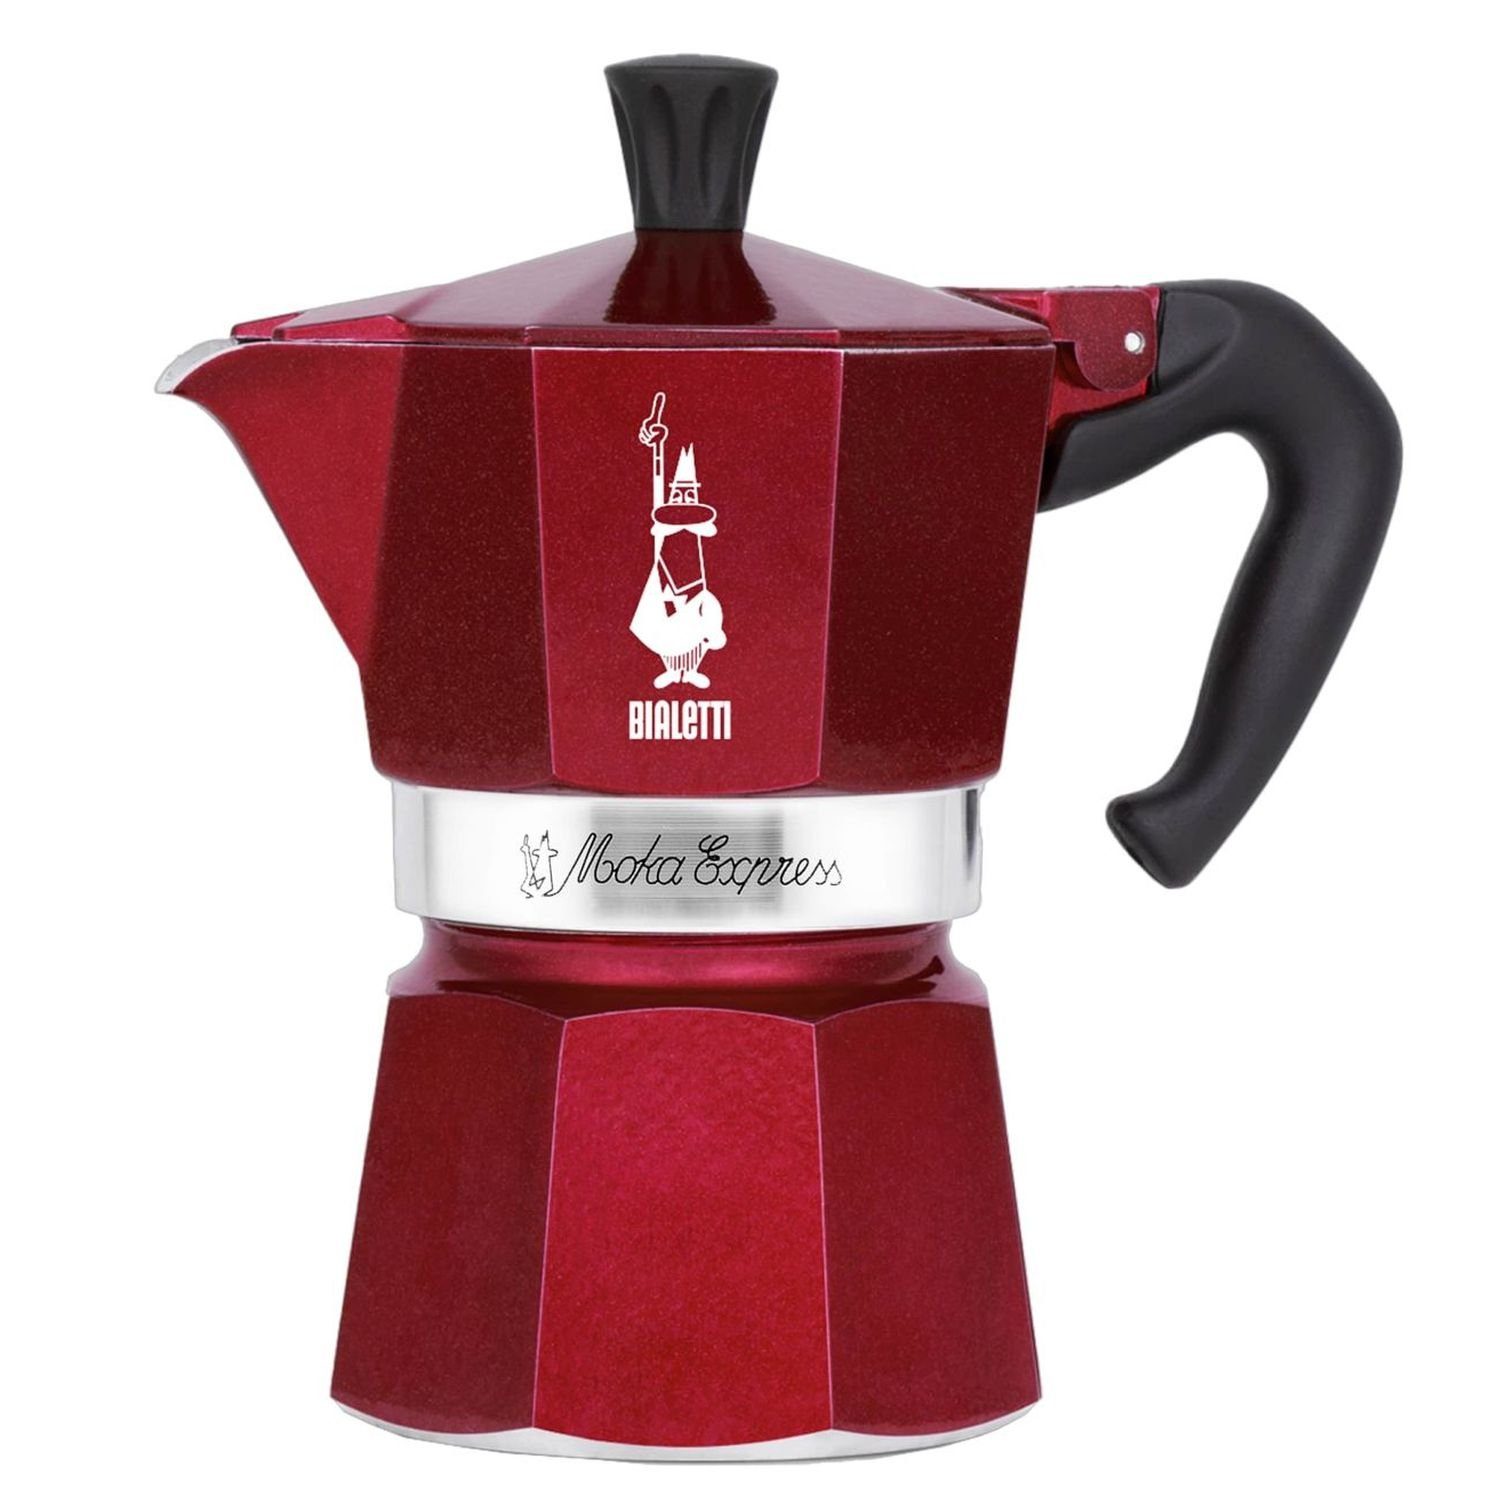 BIALETTI Espressokocher Deco Glamour Moka Express für 6 Tassen, 0,27l Kaffeekanne